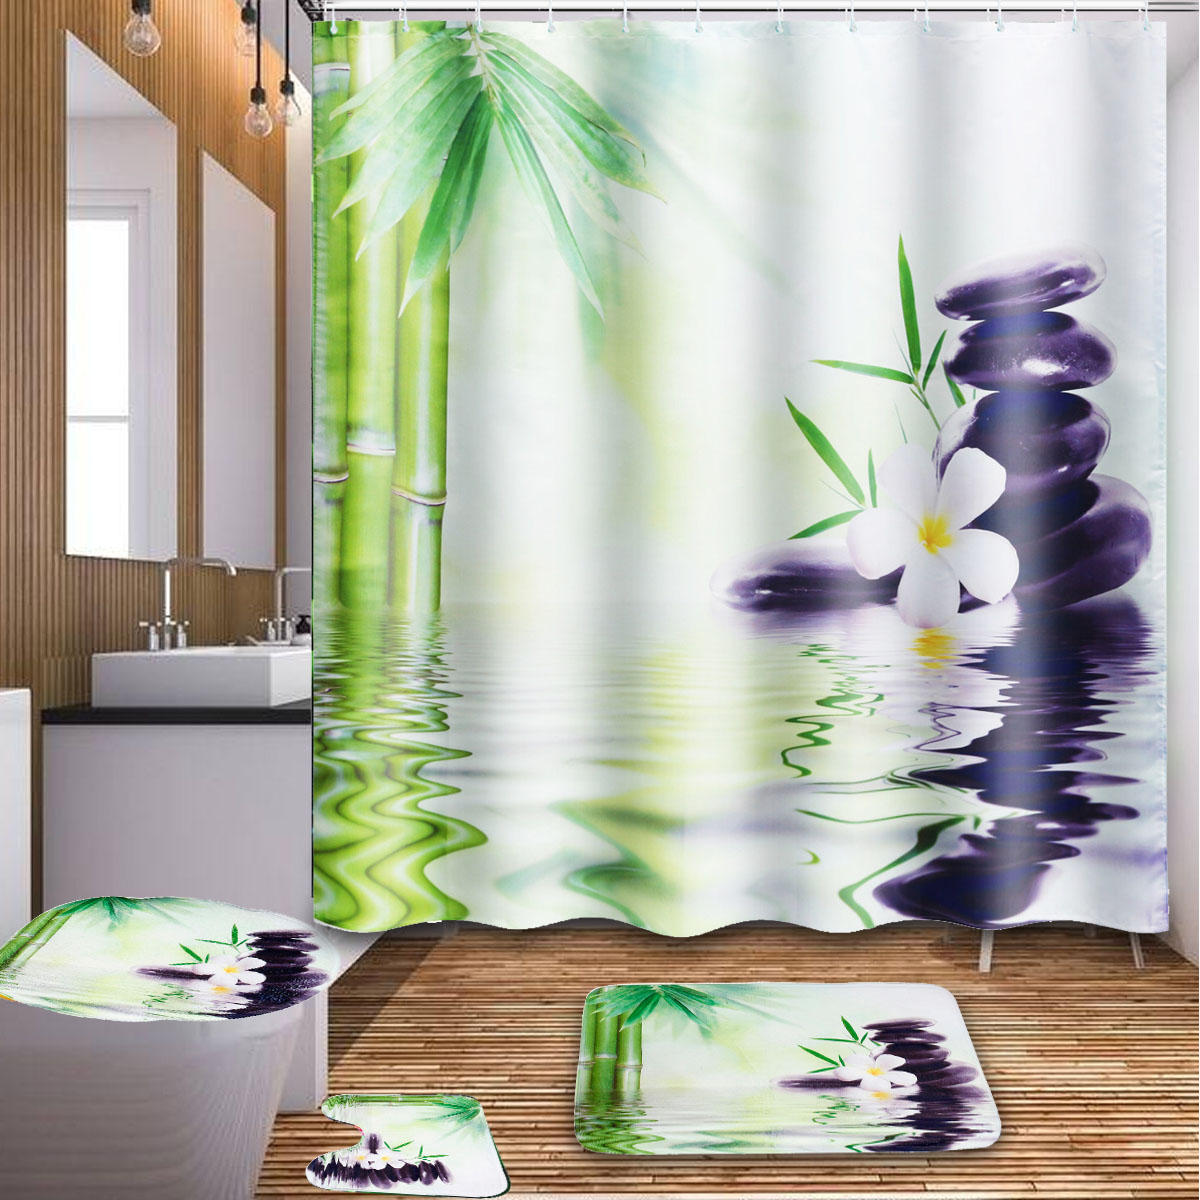 180x180cm Bamboo Orchid Stone Badkamer Douchegordijn met haken Toilet Rug Cover